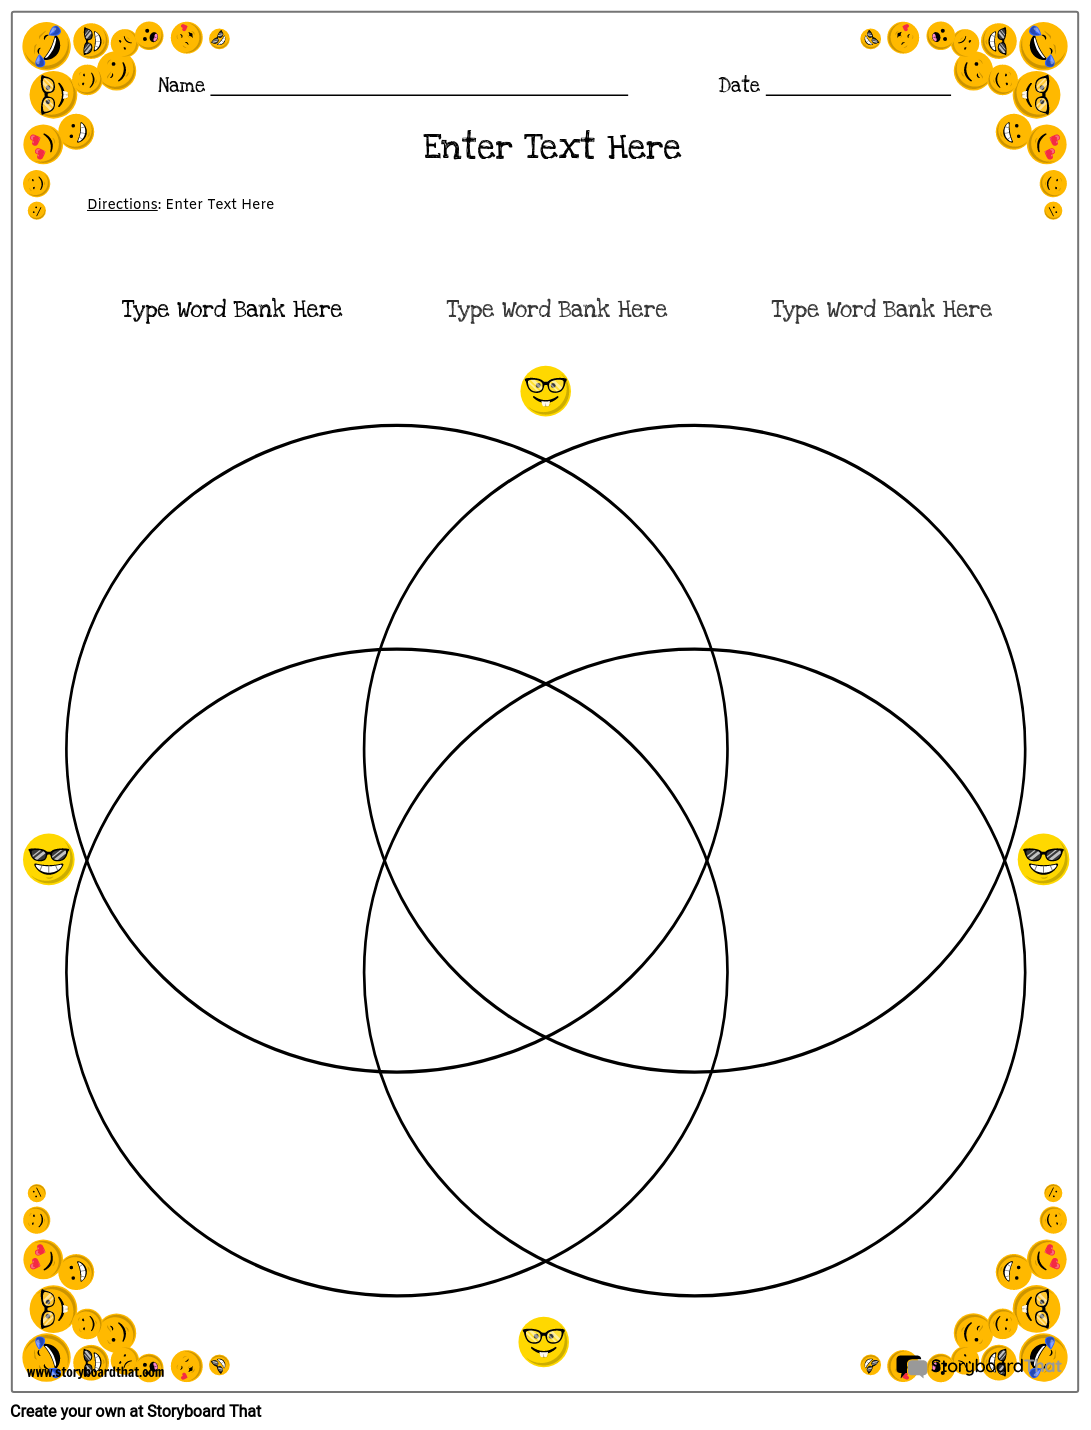 Planilha do Diagrama de Venn 9